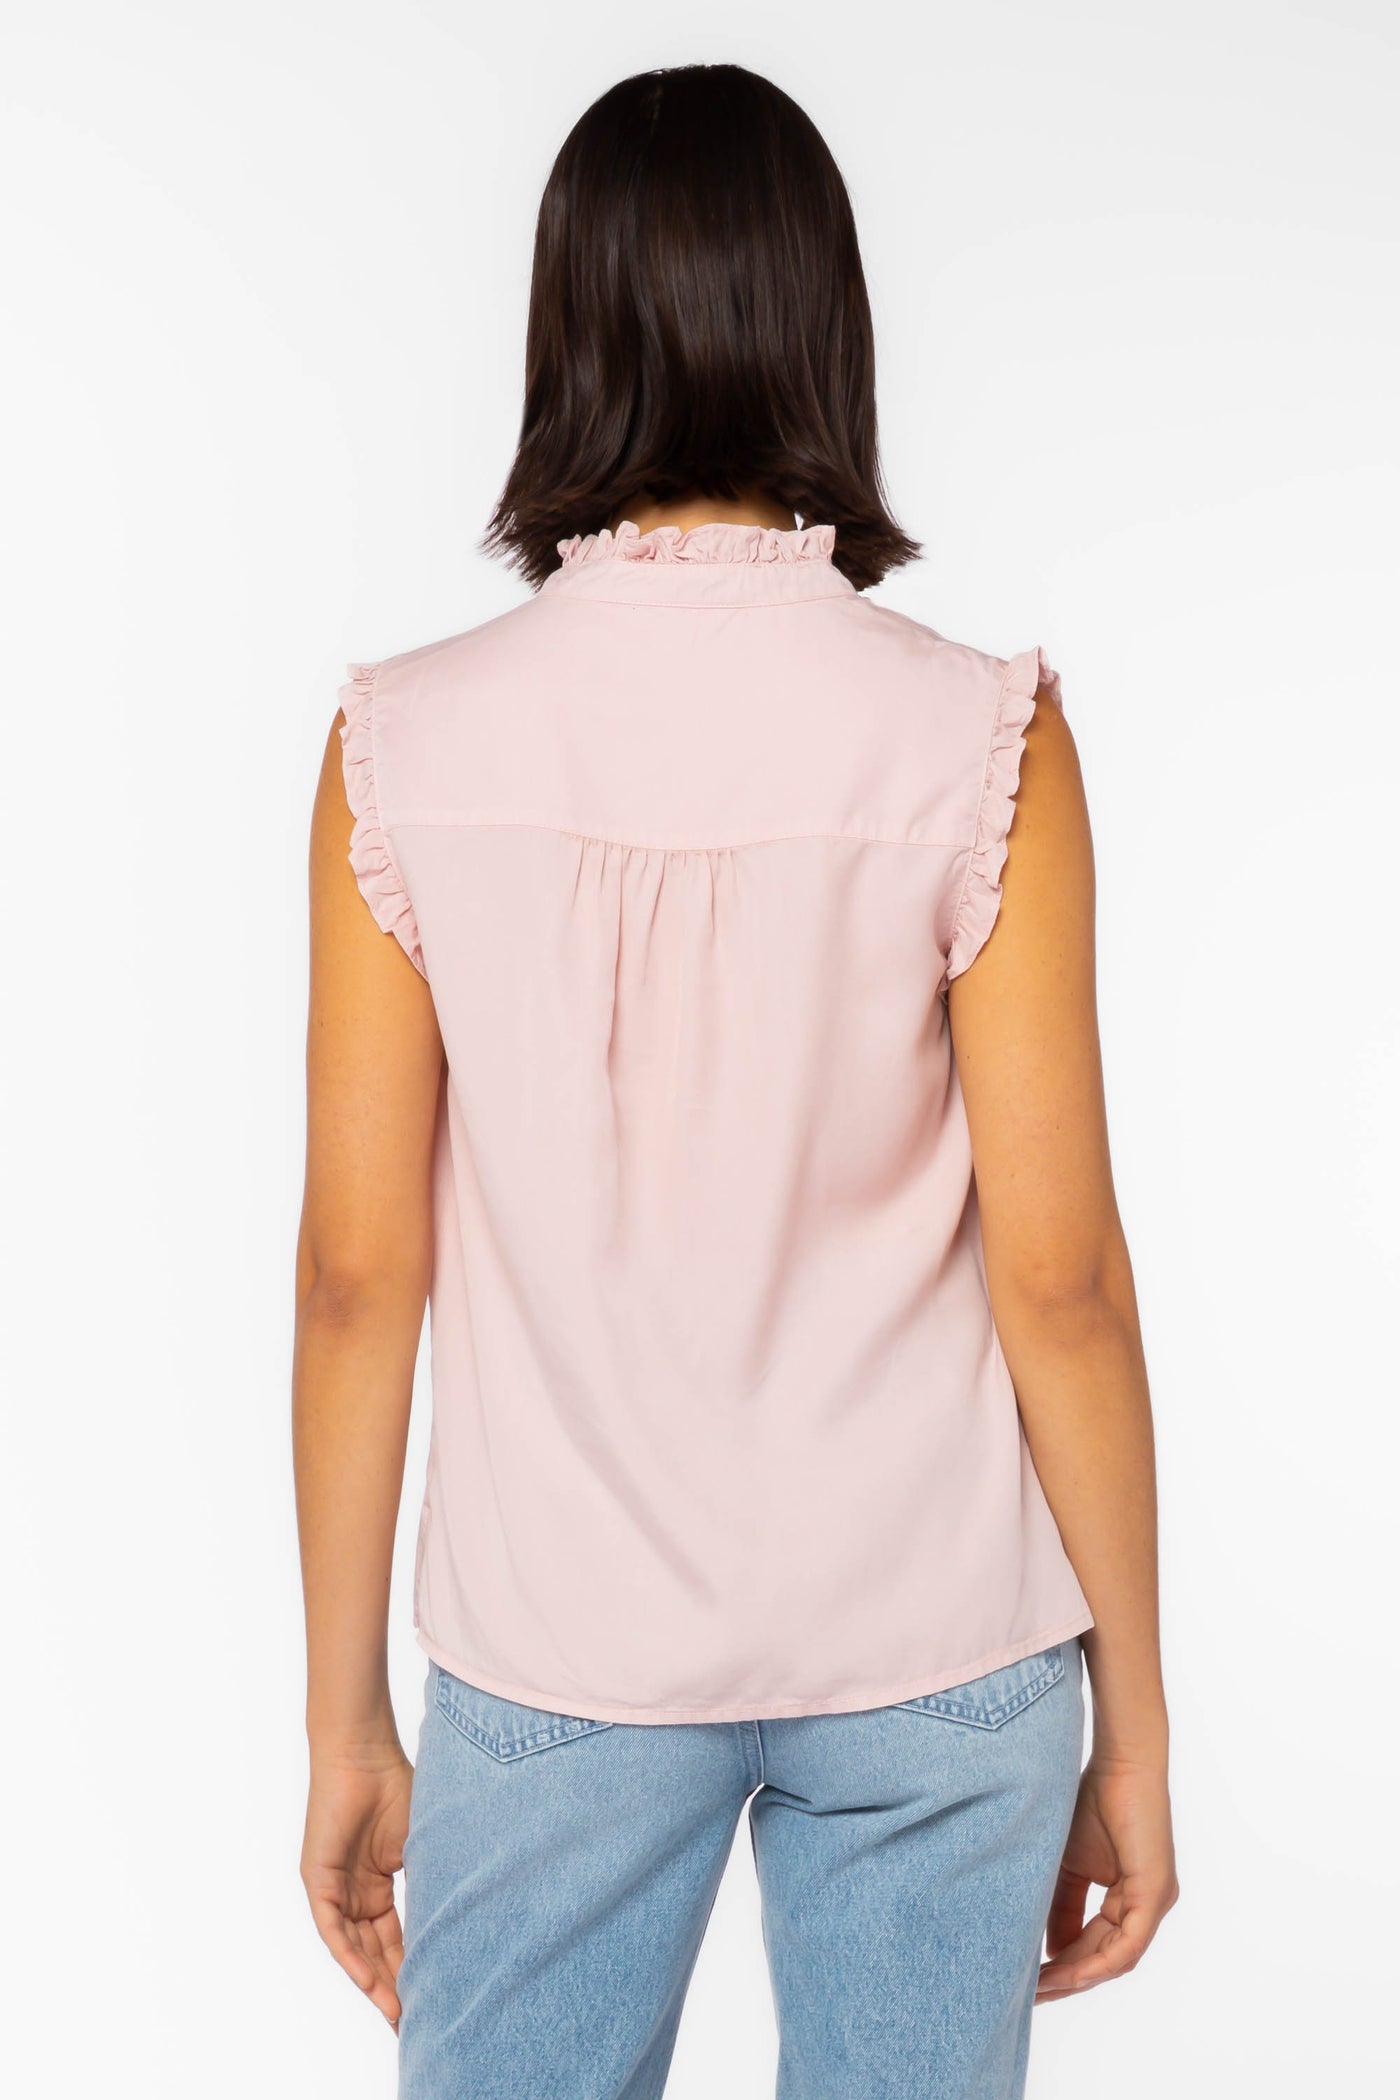 Dana Pink Shirt - Tops - Velvet Heart Clothing